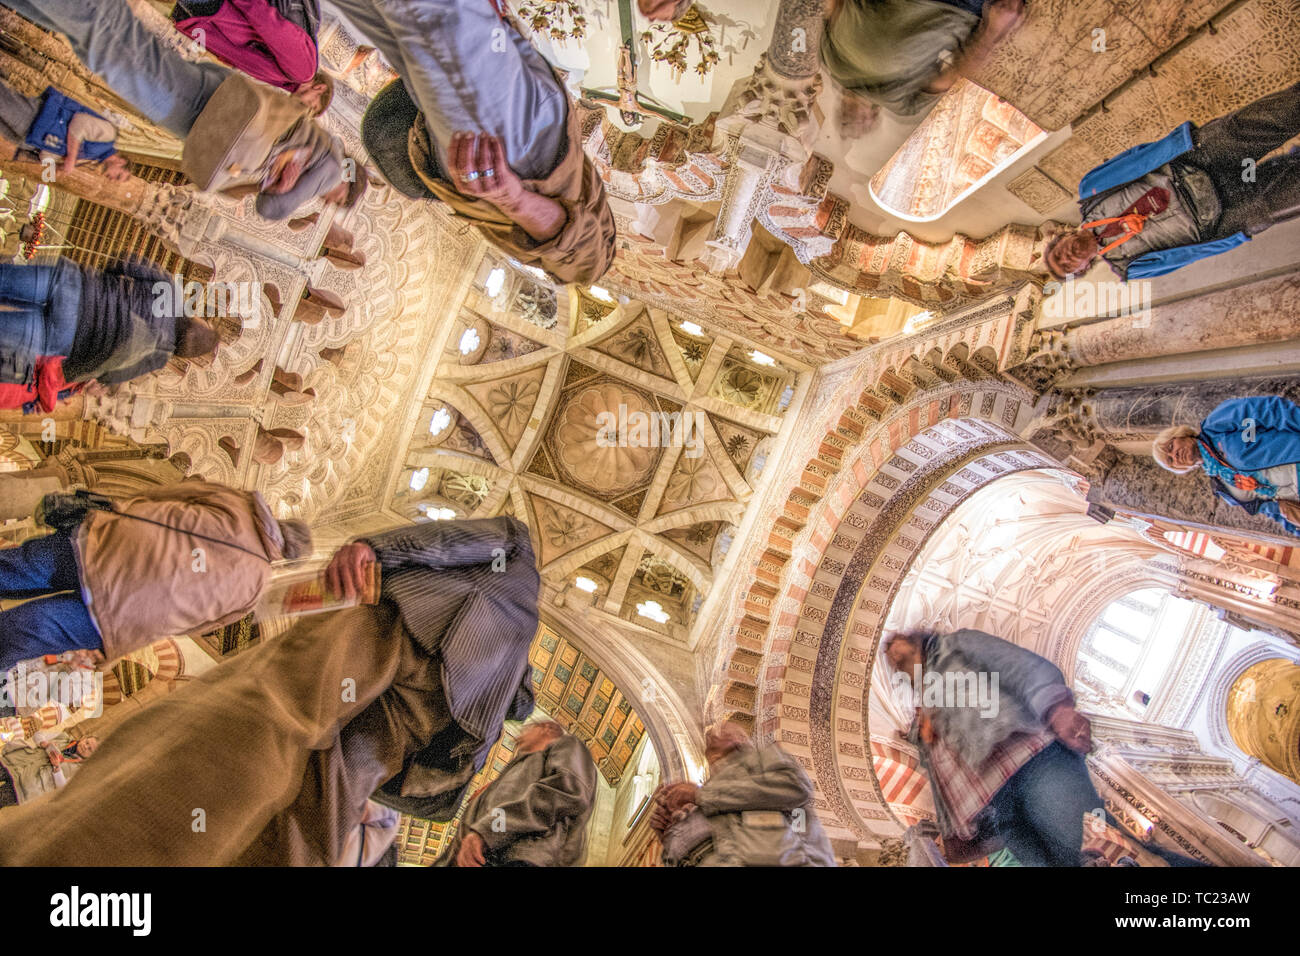 Low angle view de visiteurs au-dessous de la coupole de la chapelle de Villaviciosa, un 15e siècle Christian travailler à l'intérieur de la mosquée mauresque de Cordoue, Espagne. Banque D'Images